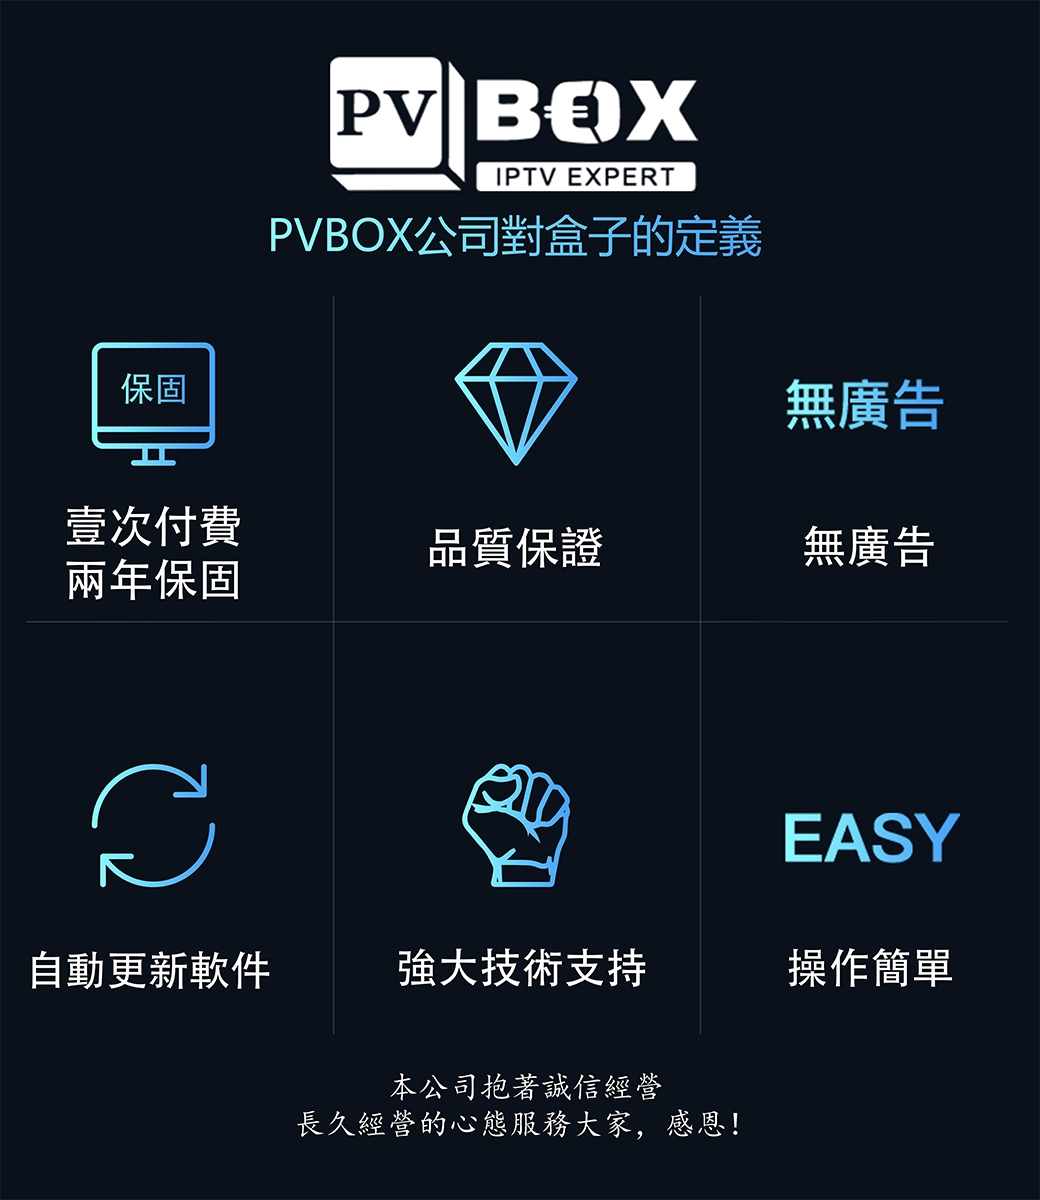 PVBOX普視 EVPAD易播電視盒